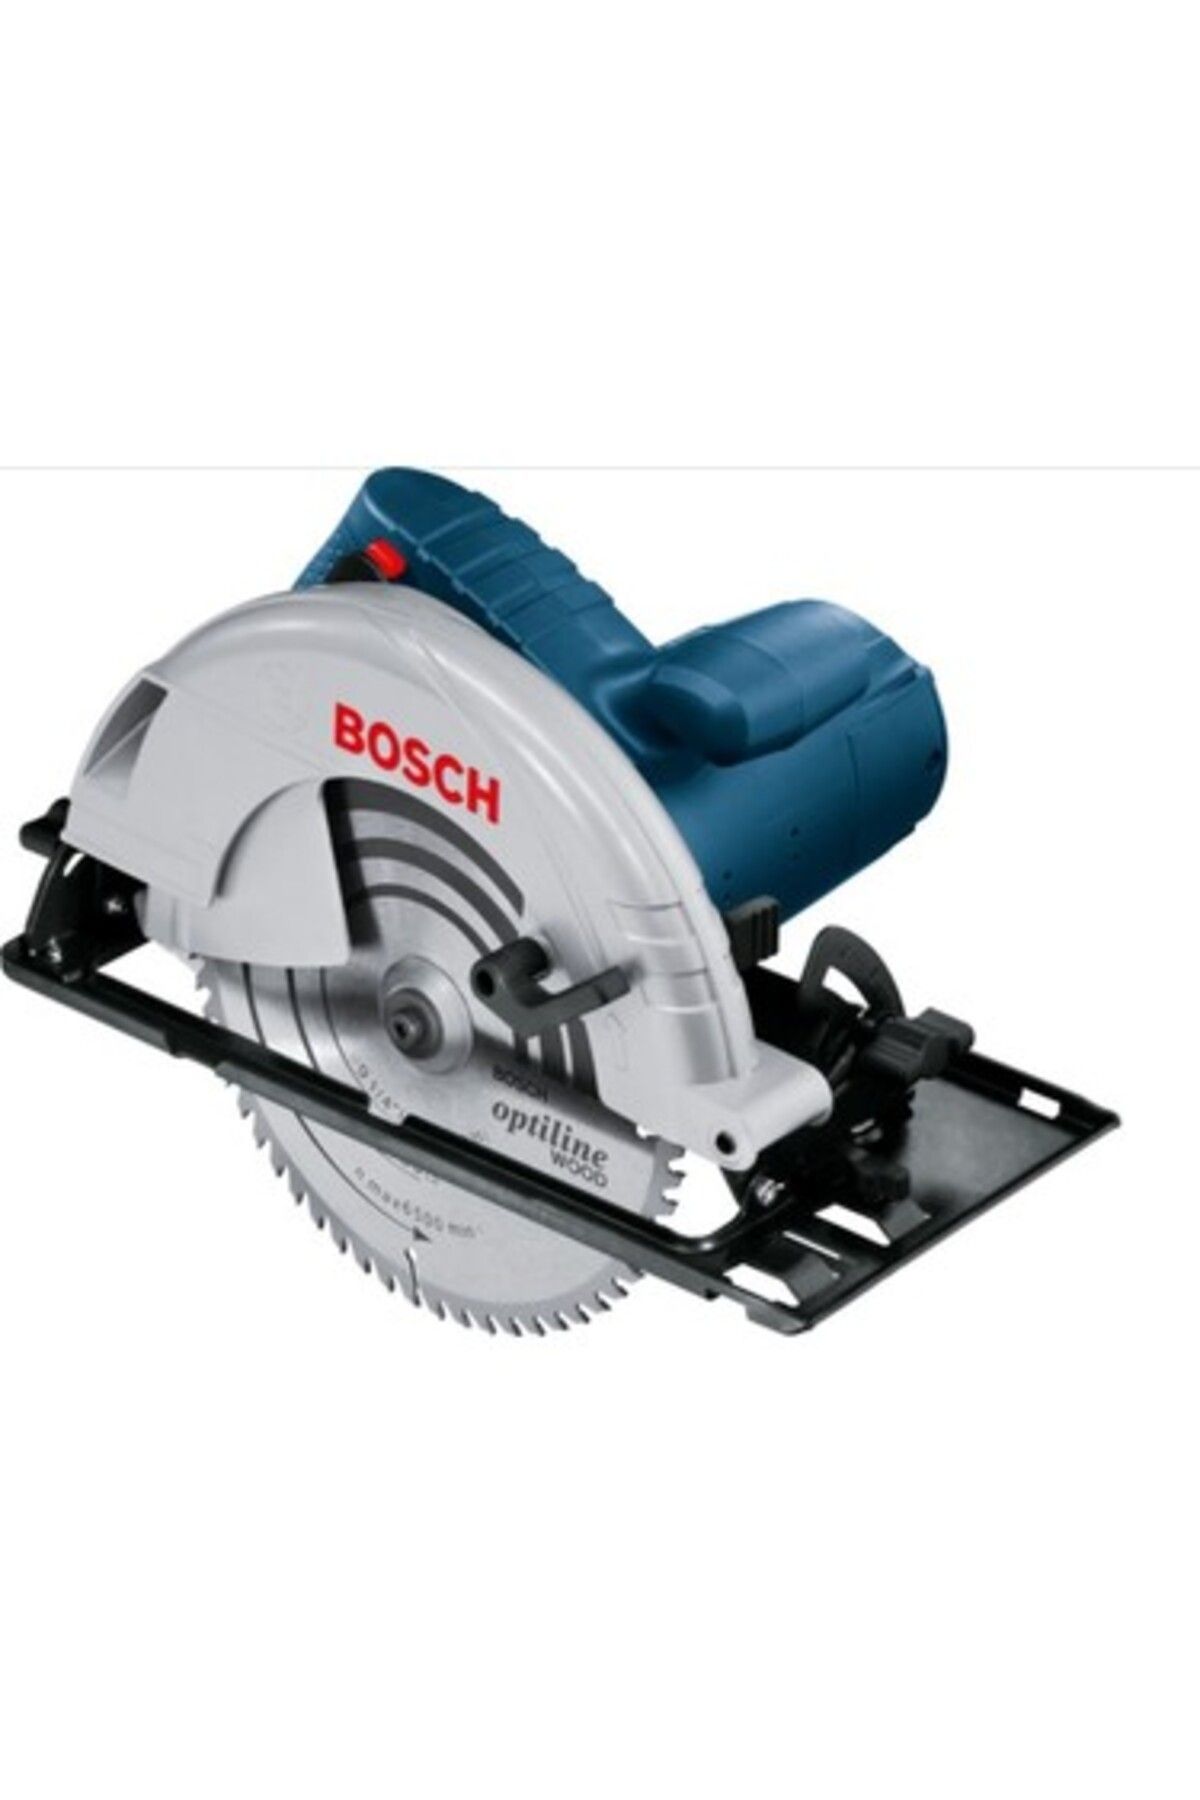 Bosch Professional Gks 235 Elektriki Sunta Kesme 2050w-06015a2001